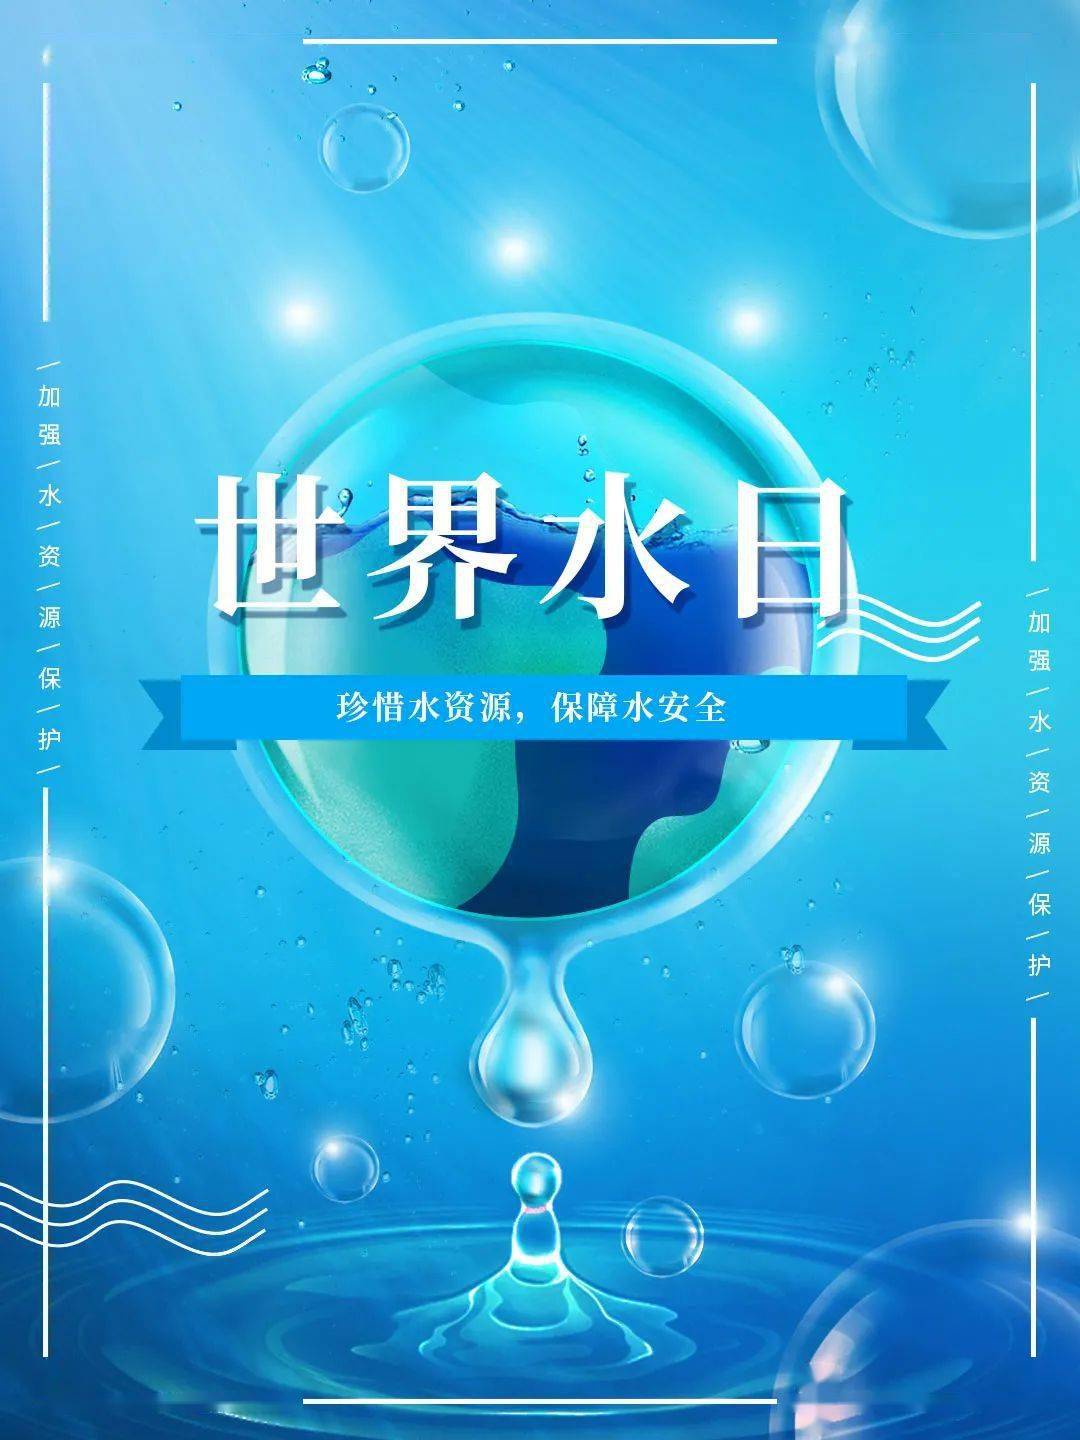 珍惜水,爱护水!2021年"世界水日""中国水周"主题口号学起来